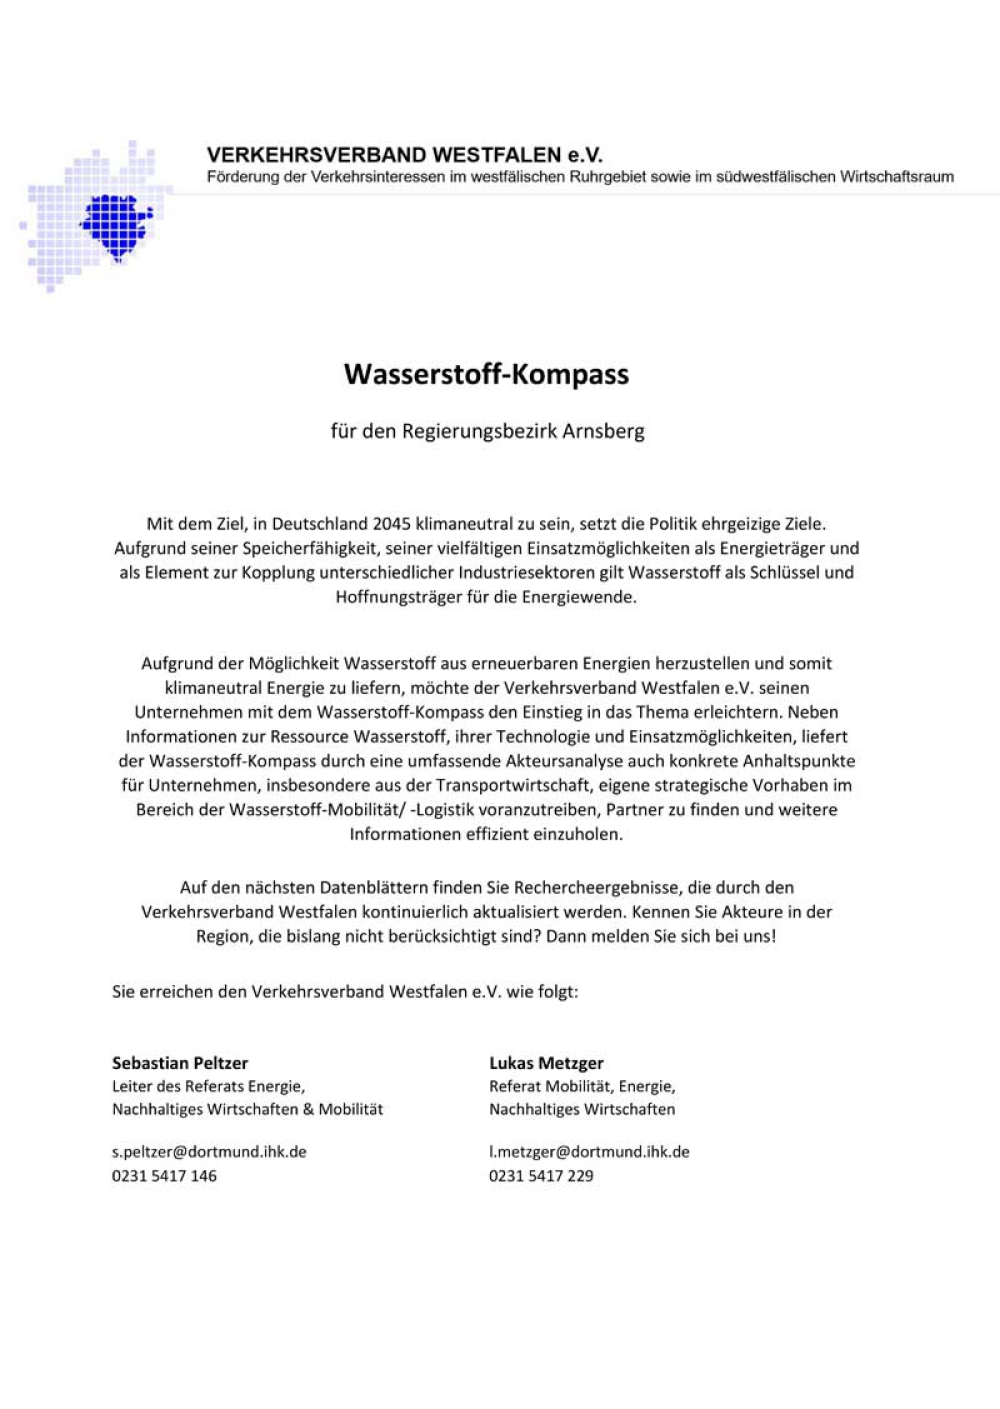 Wasserstoffatlas für Westfalen: Liste der Akteure